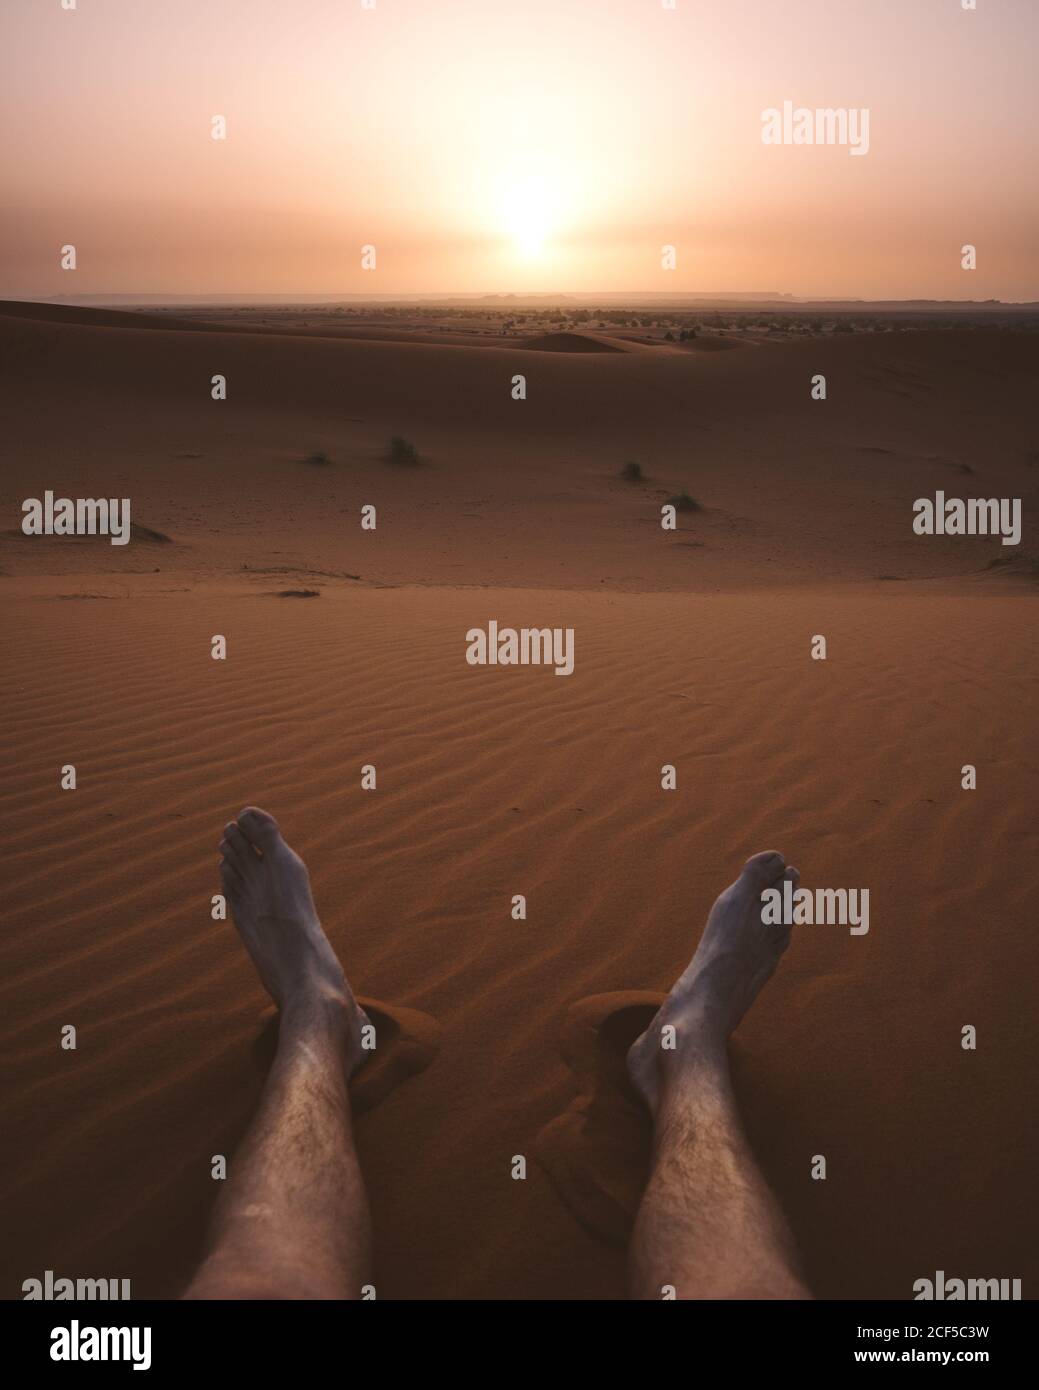 Crop männlichen barfuß Beine auf Sand der endlosen Wüste Düne in trüben Licht des Sonnenuntergangs, Marokko Stockfoto